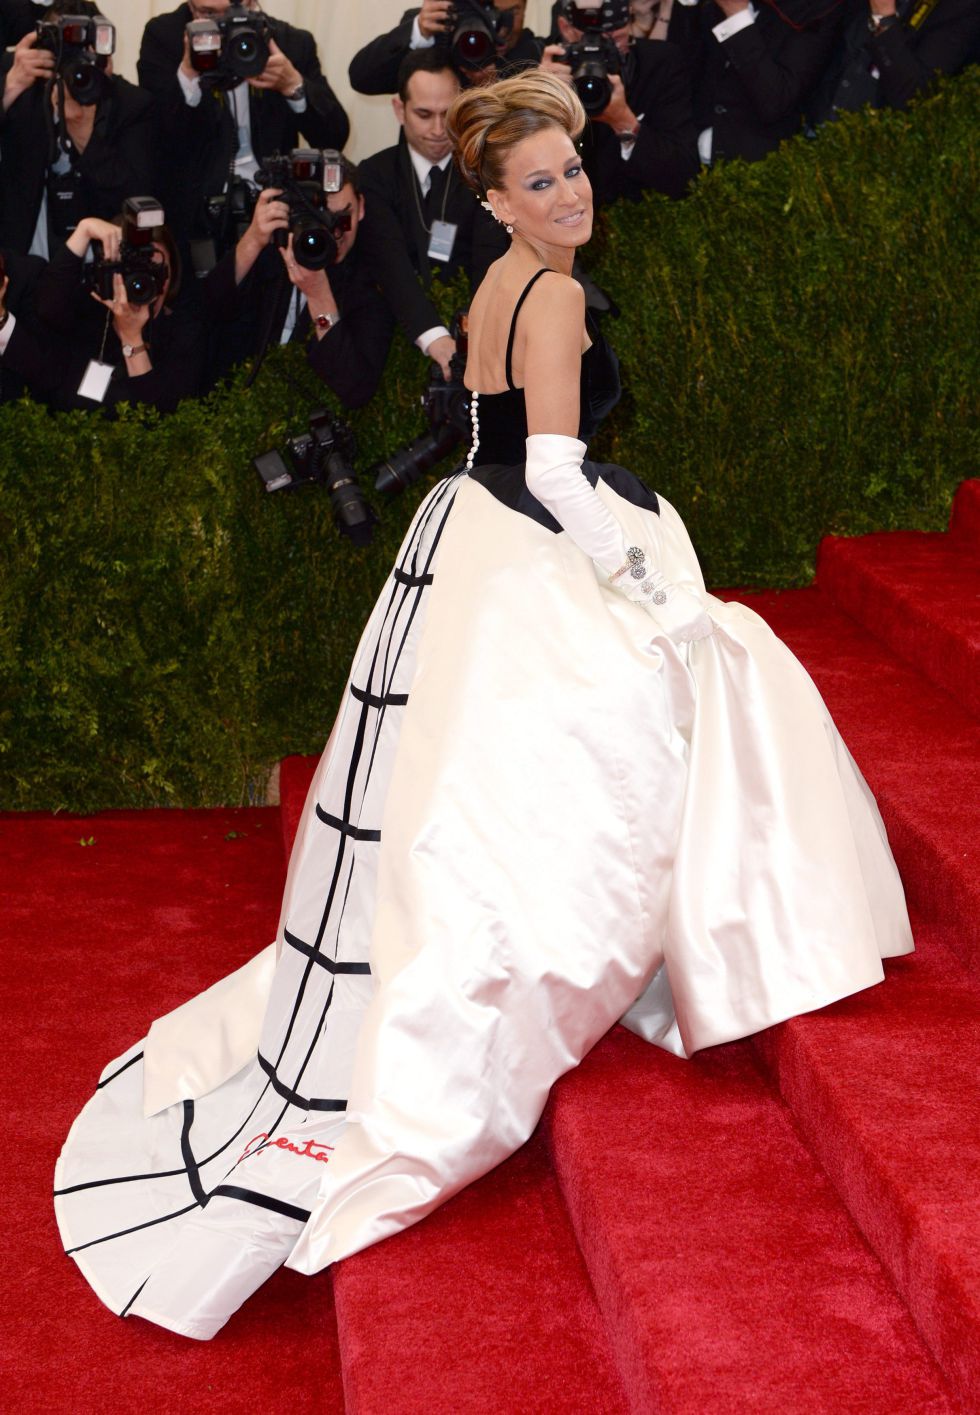 El modelo capote y otros vestidos desafortunados en la gala de los Oscar